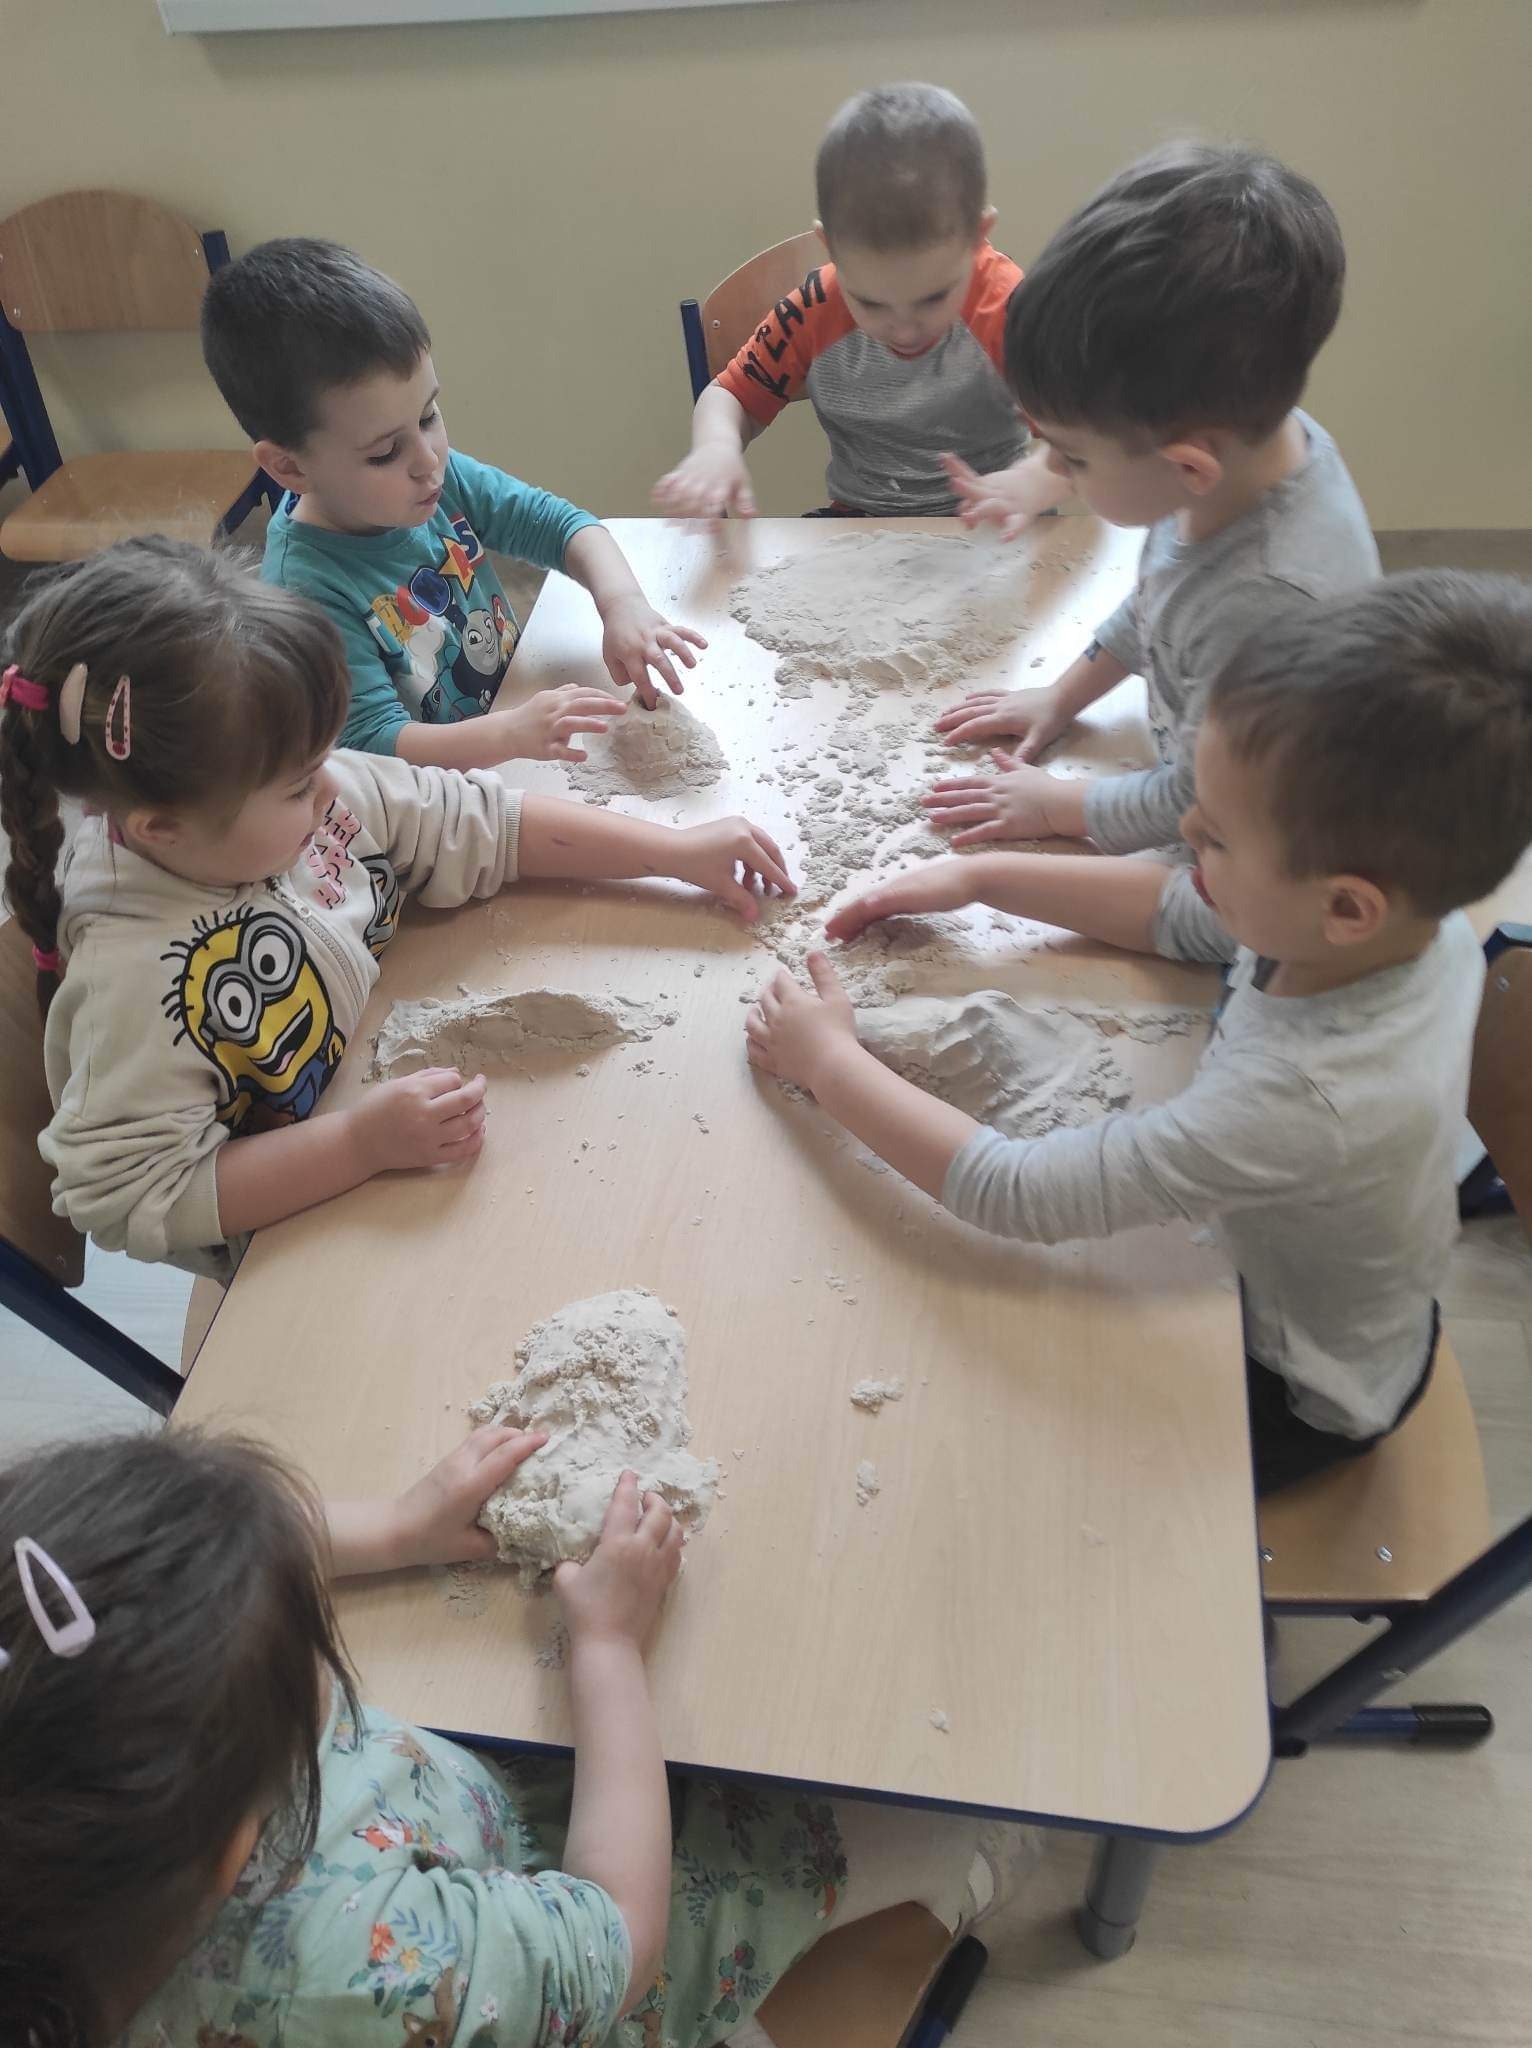 dzieci w biedronkach bawią się masą solną